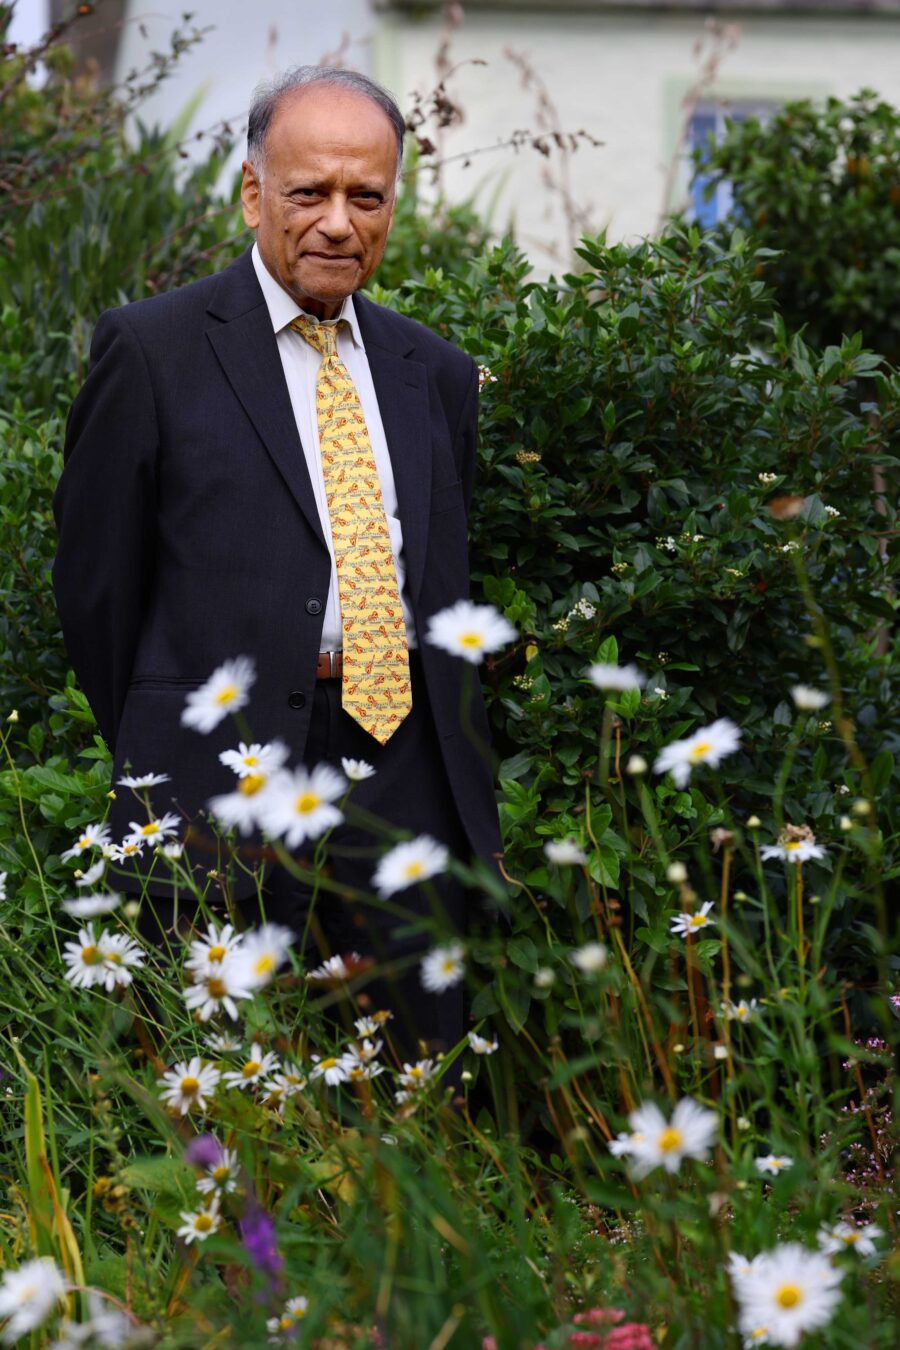 Professor Sir Partha Dasgupta in Wigtown Gardens, white flowers in the foreground.